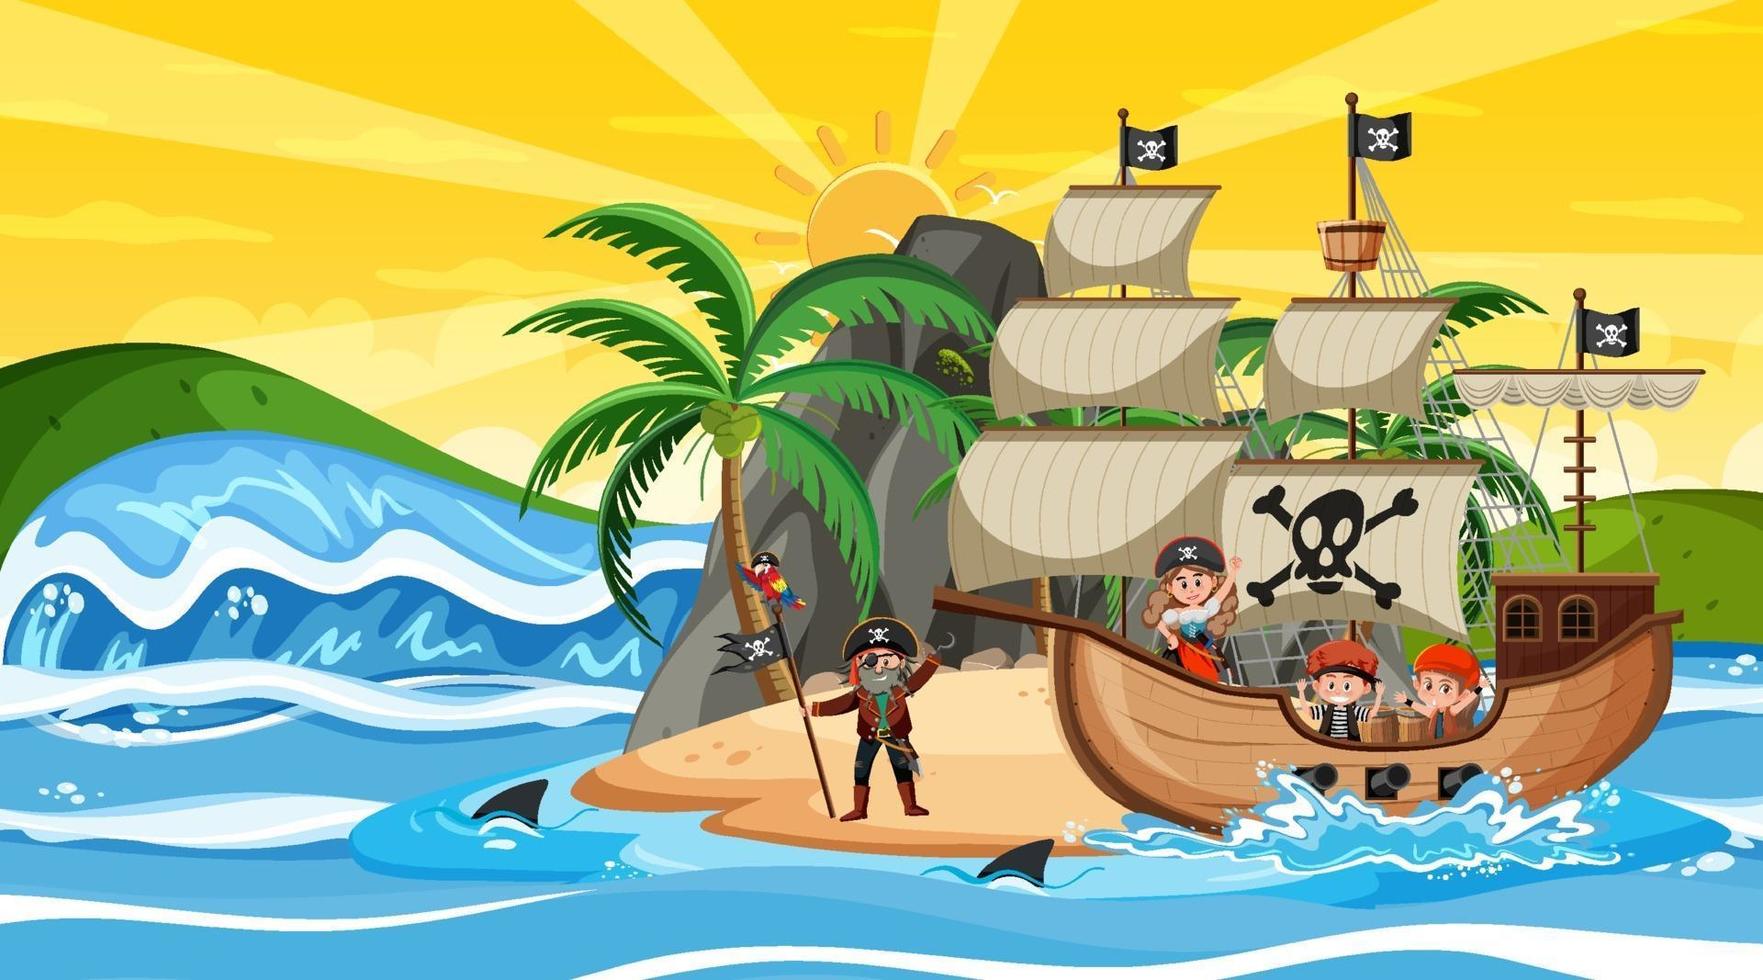 Insel mit Piratenschiff bei Sonnenuntergang Szene im Cartoon-Stil vektor